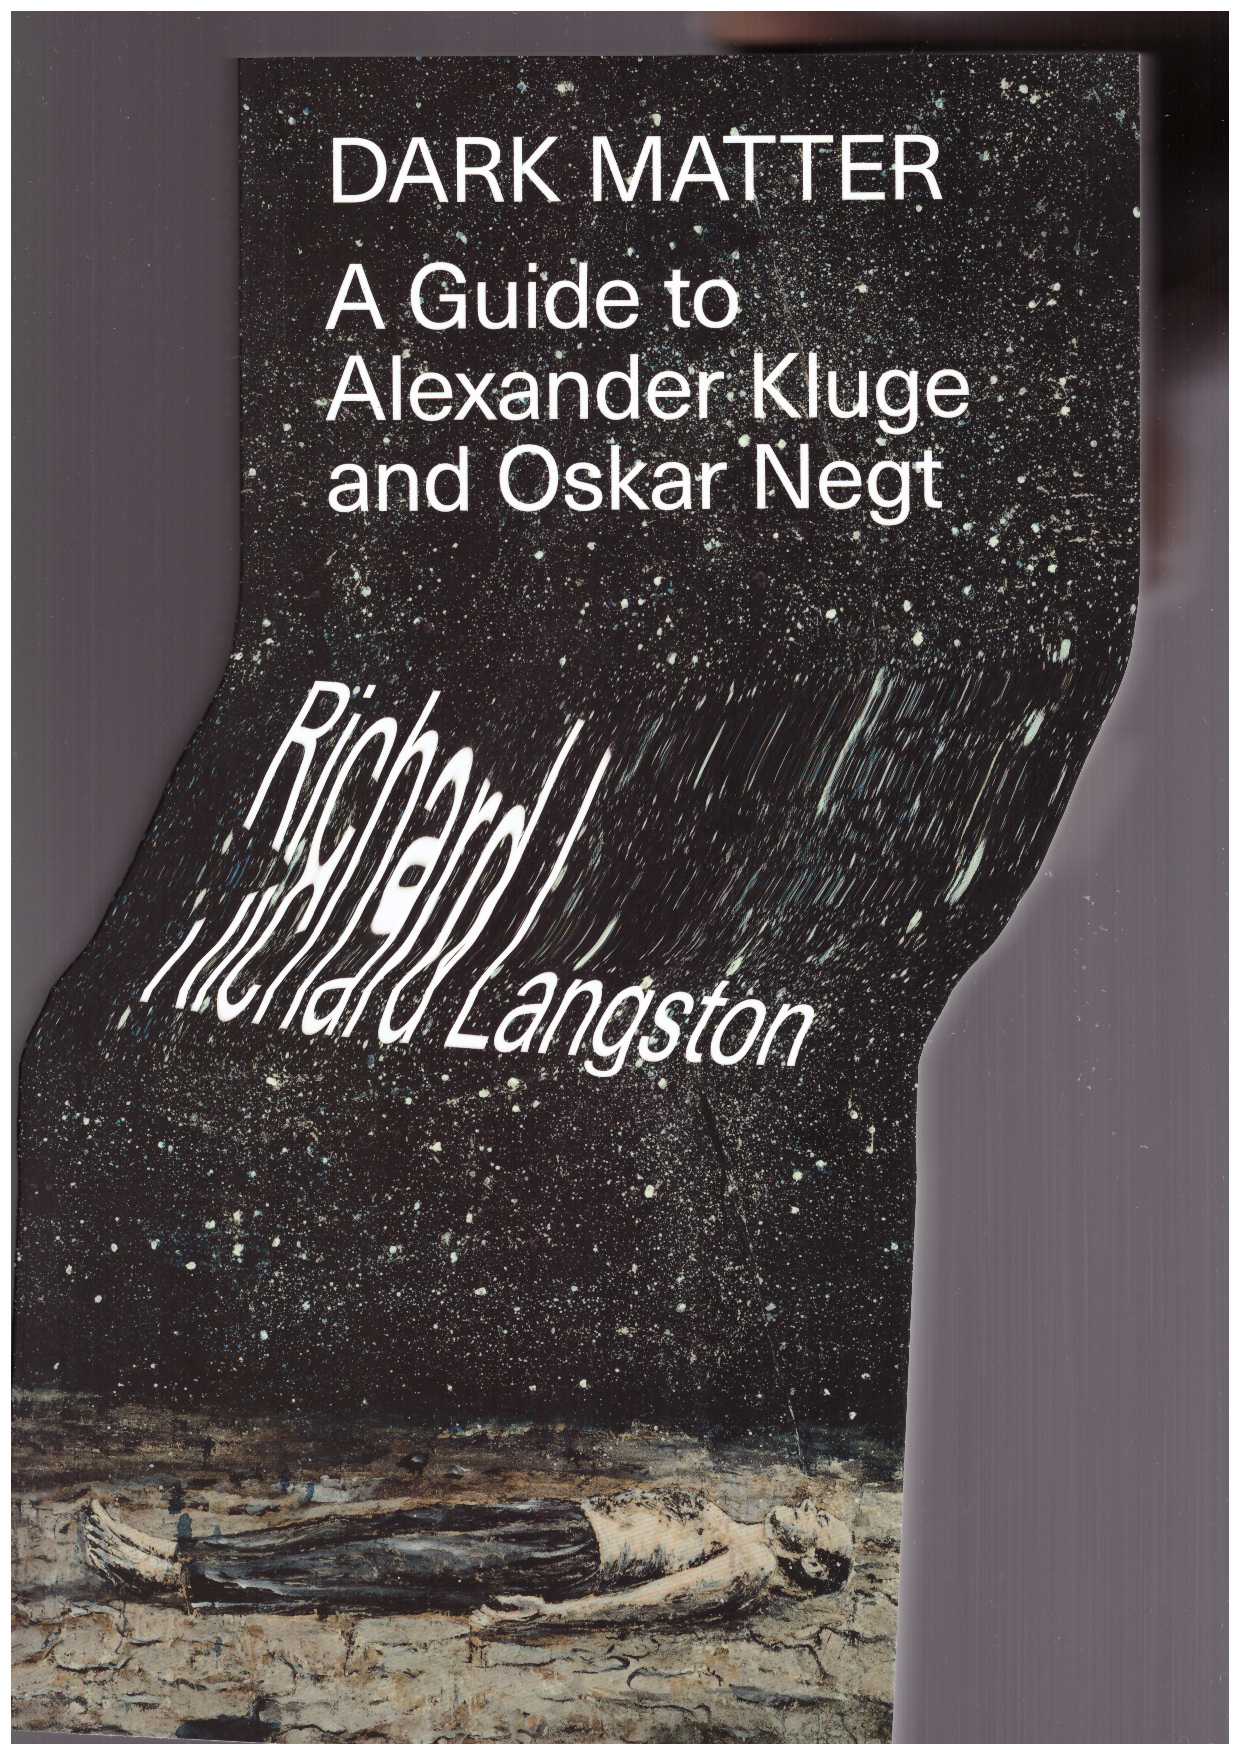 LANFGSTON, Richard - Dark Matter. A Guide to Alexander Kluge and Oskar Negt